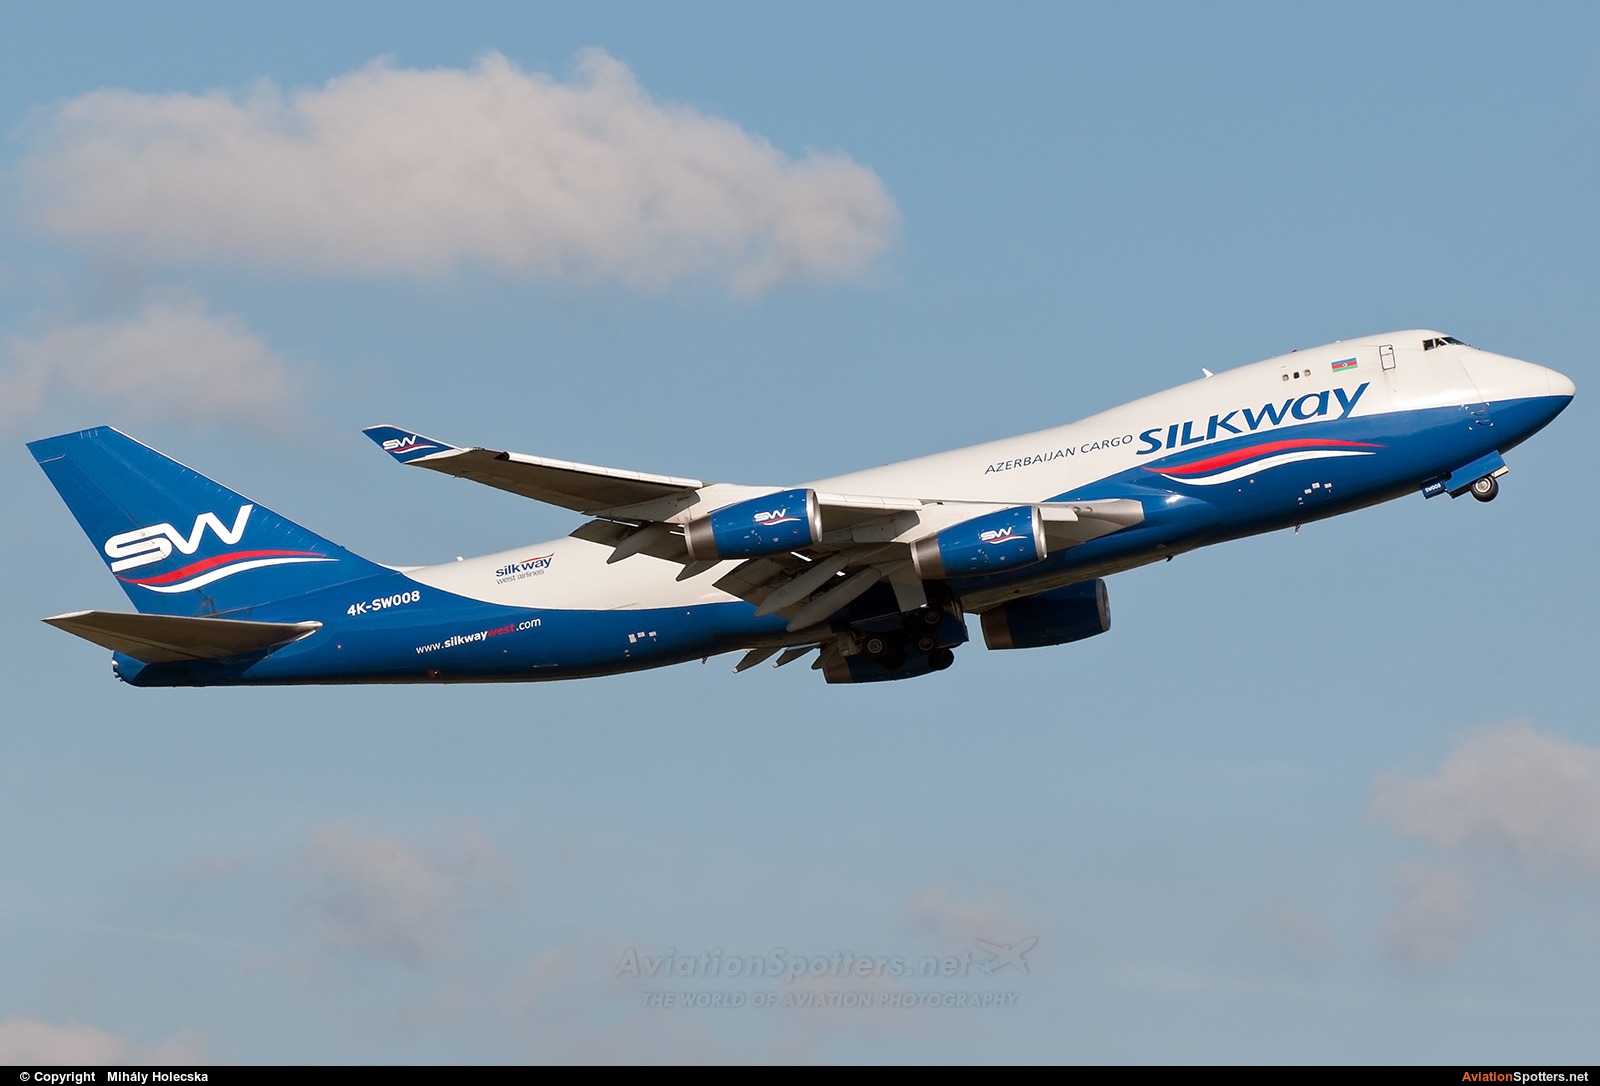 Silk Way Airlines  -  747-400  (4K-SW008) By Mihály Holecska (Misixx)